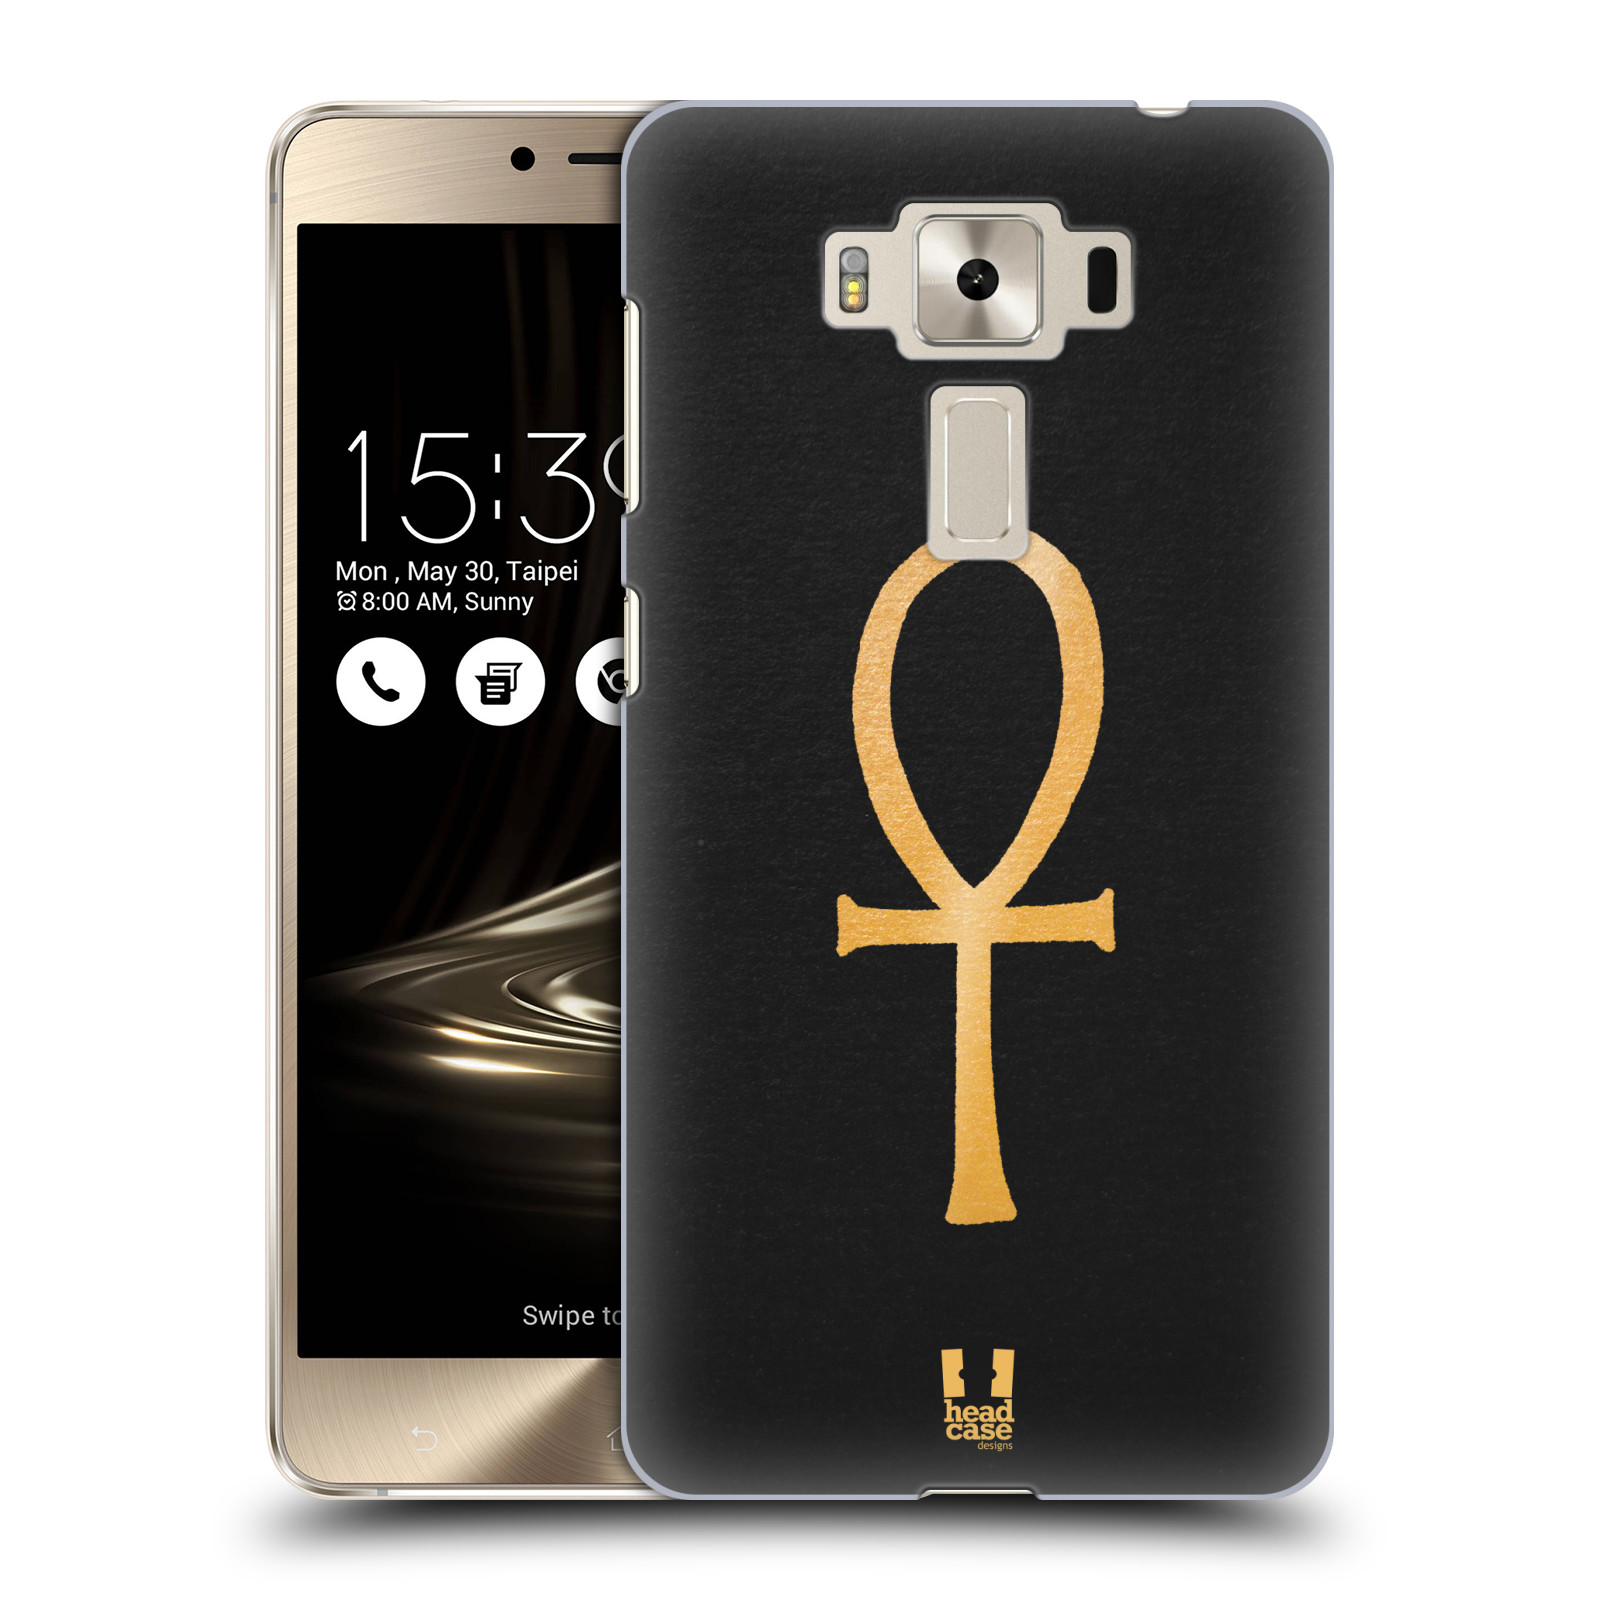 HEAD CASE plastový obal na mobil Asus Zenfone 3 DELUXE ZS550KL vzor EGYPT zlatá a černá SYMBOL ŽIVOTA